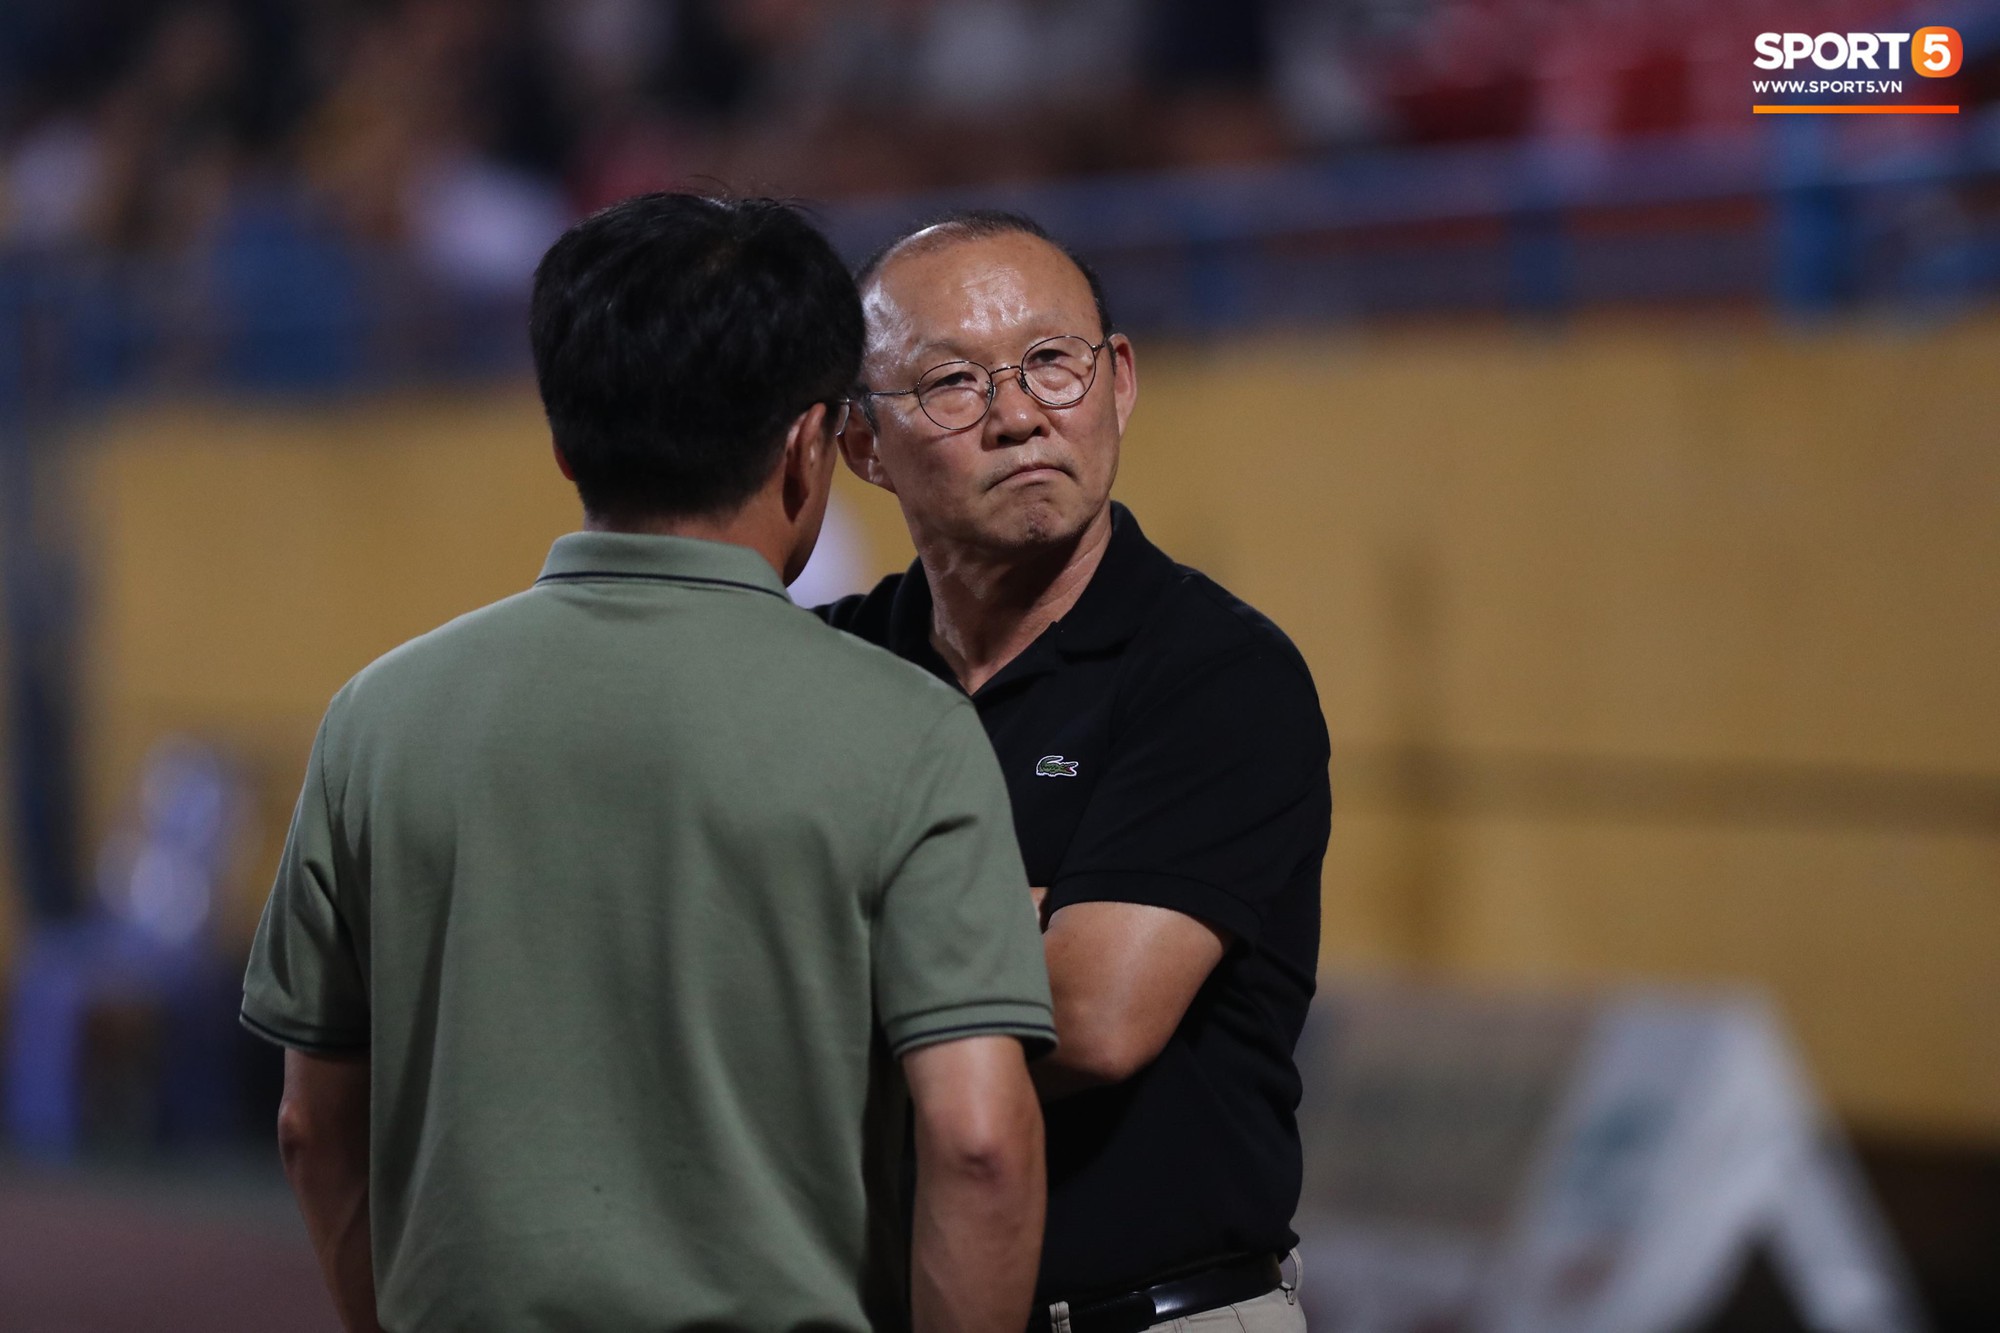 Thầy Park đầy suy tư khi chứng kiến Hải Quế, Tiến Dũng để thủng lưới tới 3 bàn trong trận đấu với Quảng Ninh - Ảnh 8.